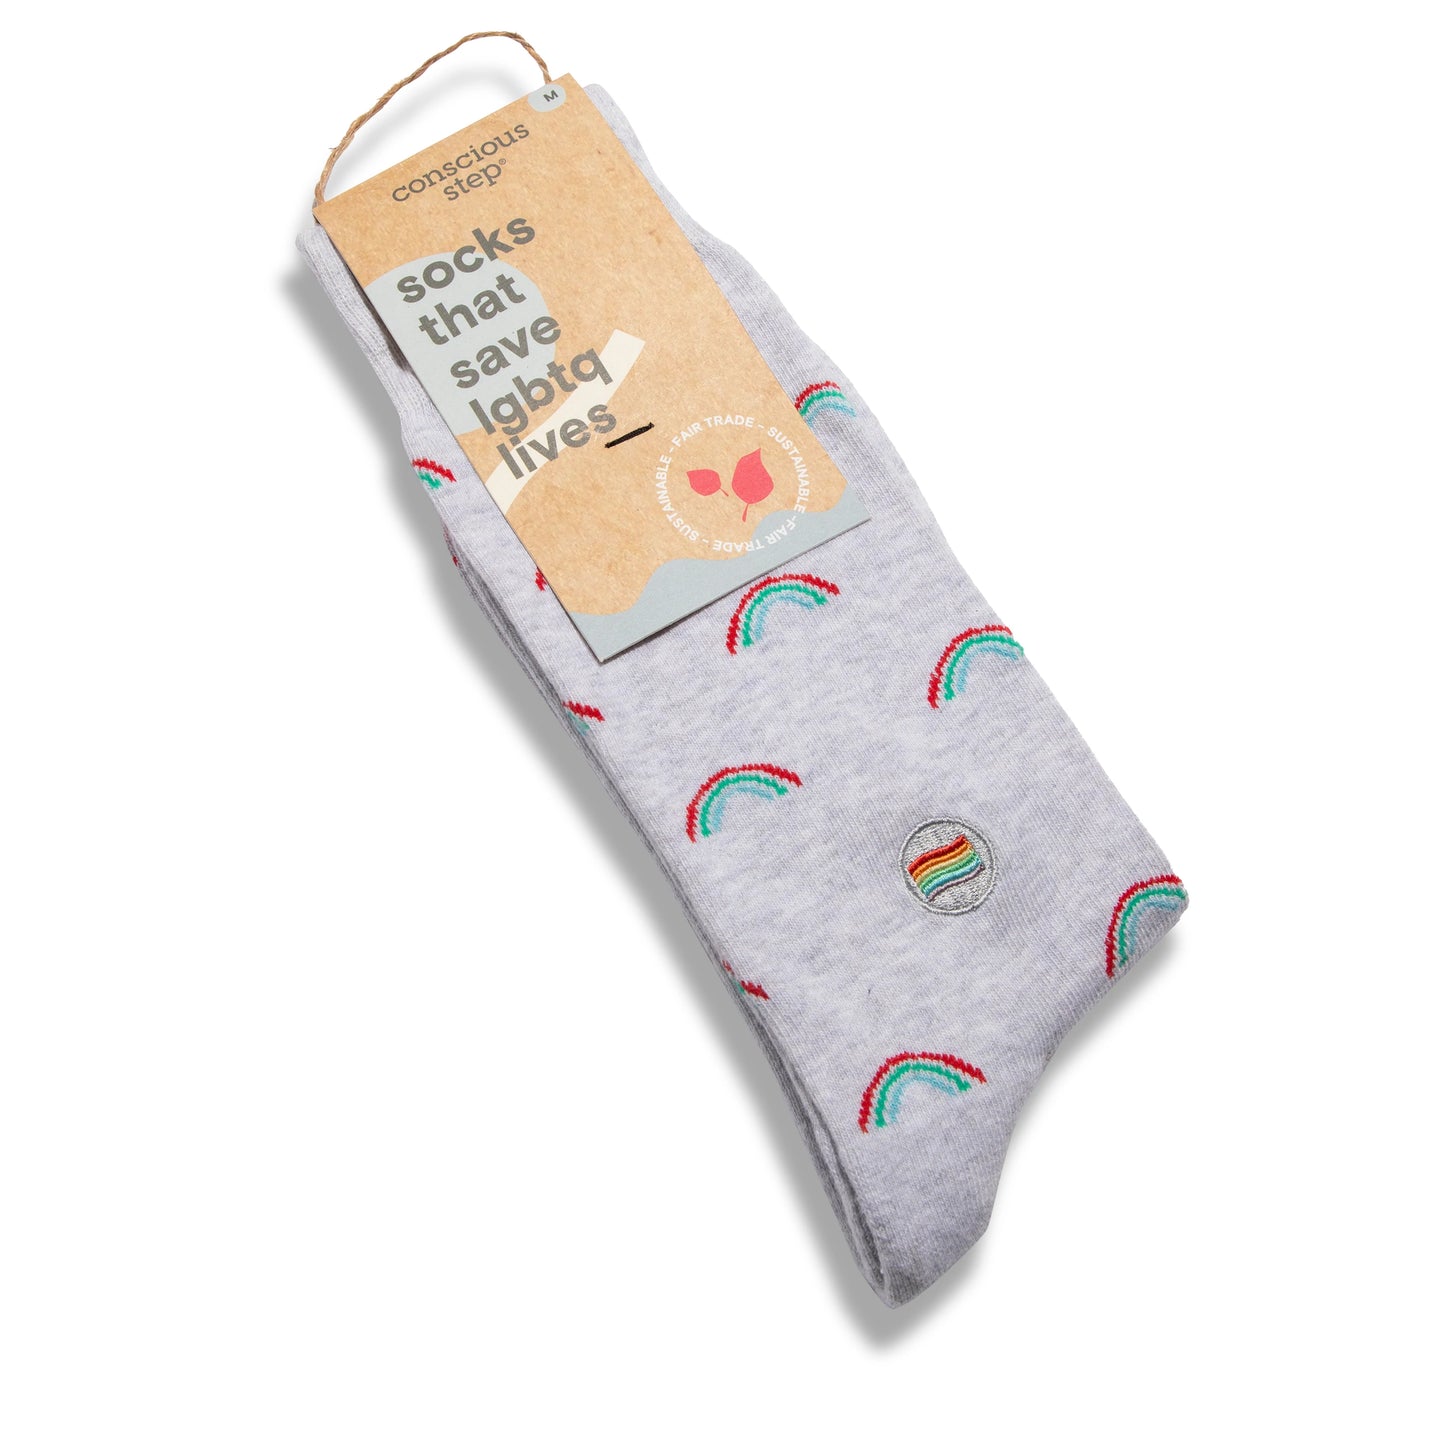 Socks That Save LGBTQ Lives - Rainbow Pattern